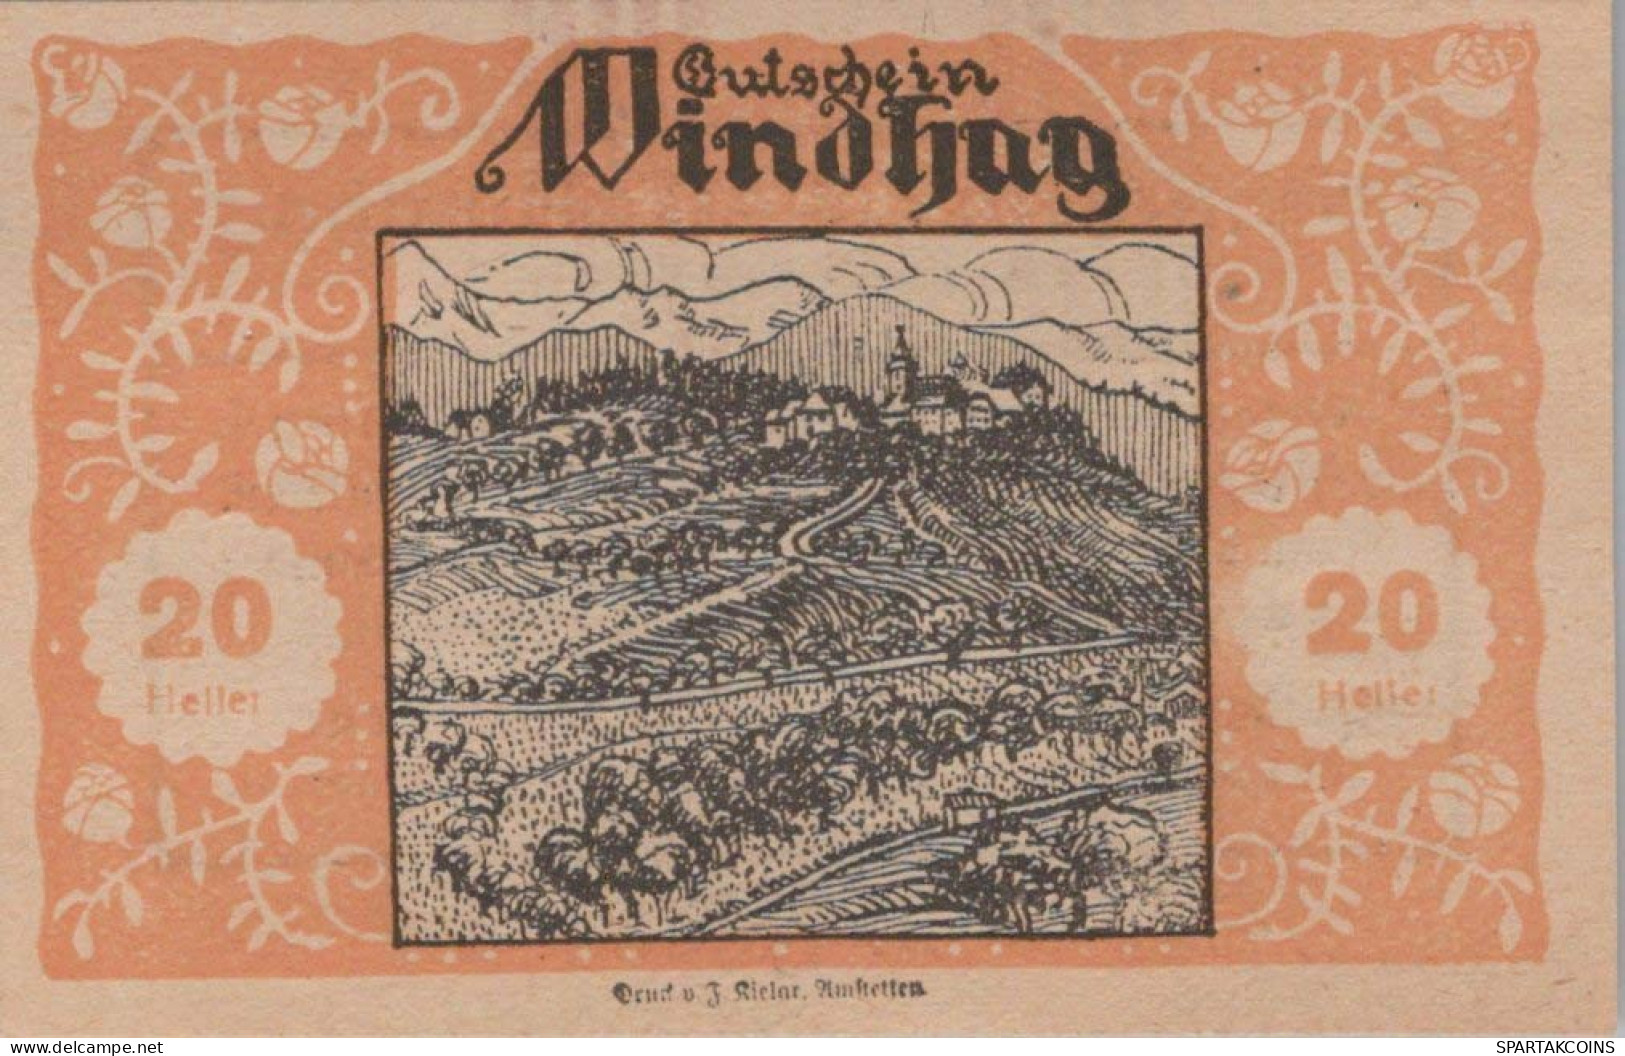 20 HELLER 1920 Stadt WINDHAG Niedrigeren Österreich Notgeld Papiergeld Banknote #PG749 - [11] Local Banknote Issues